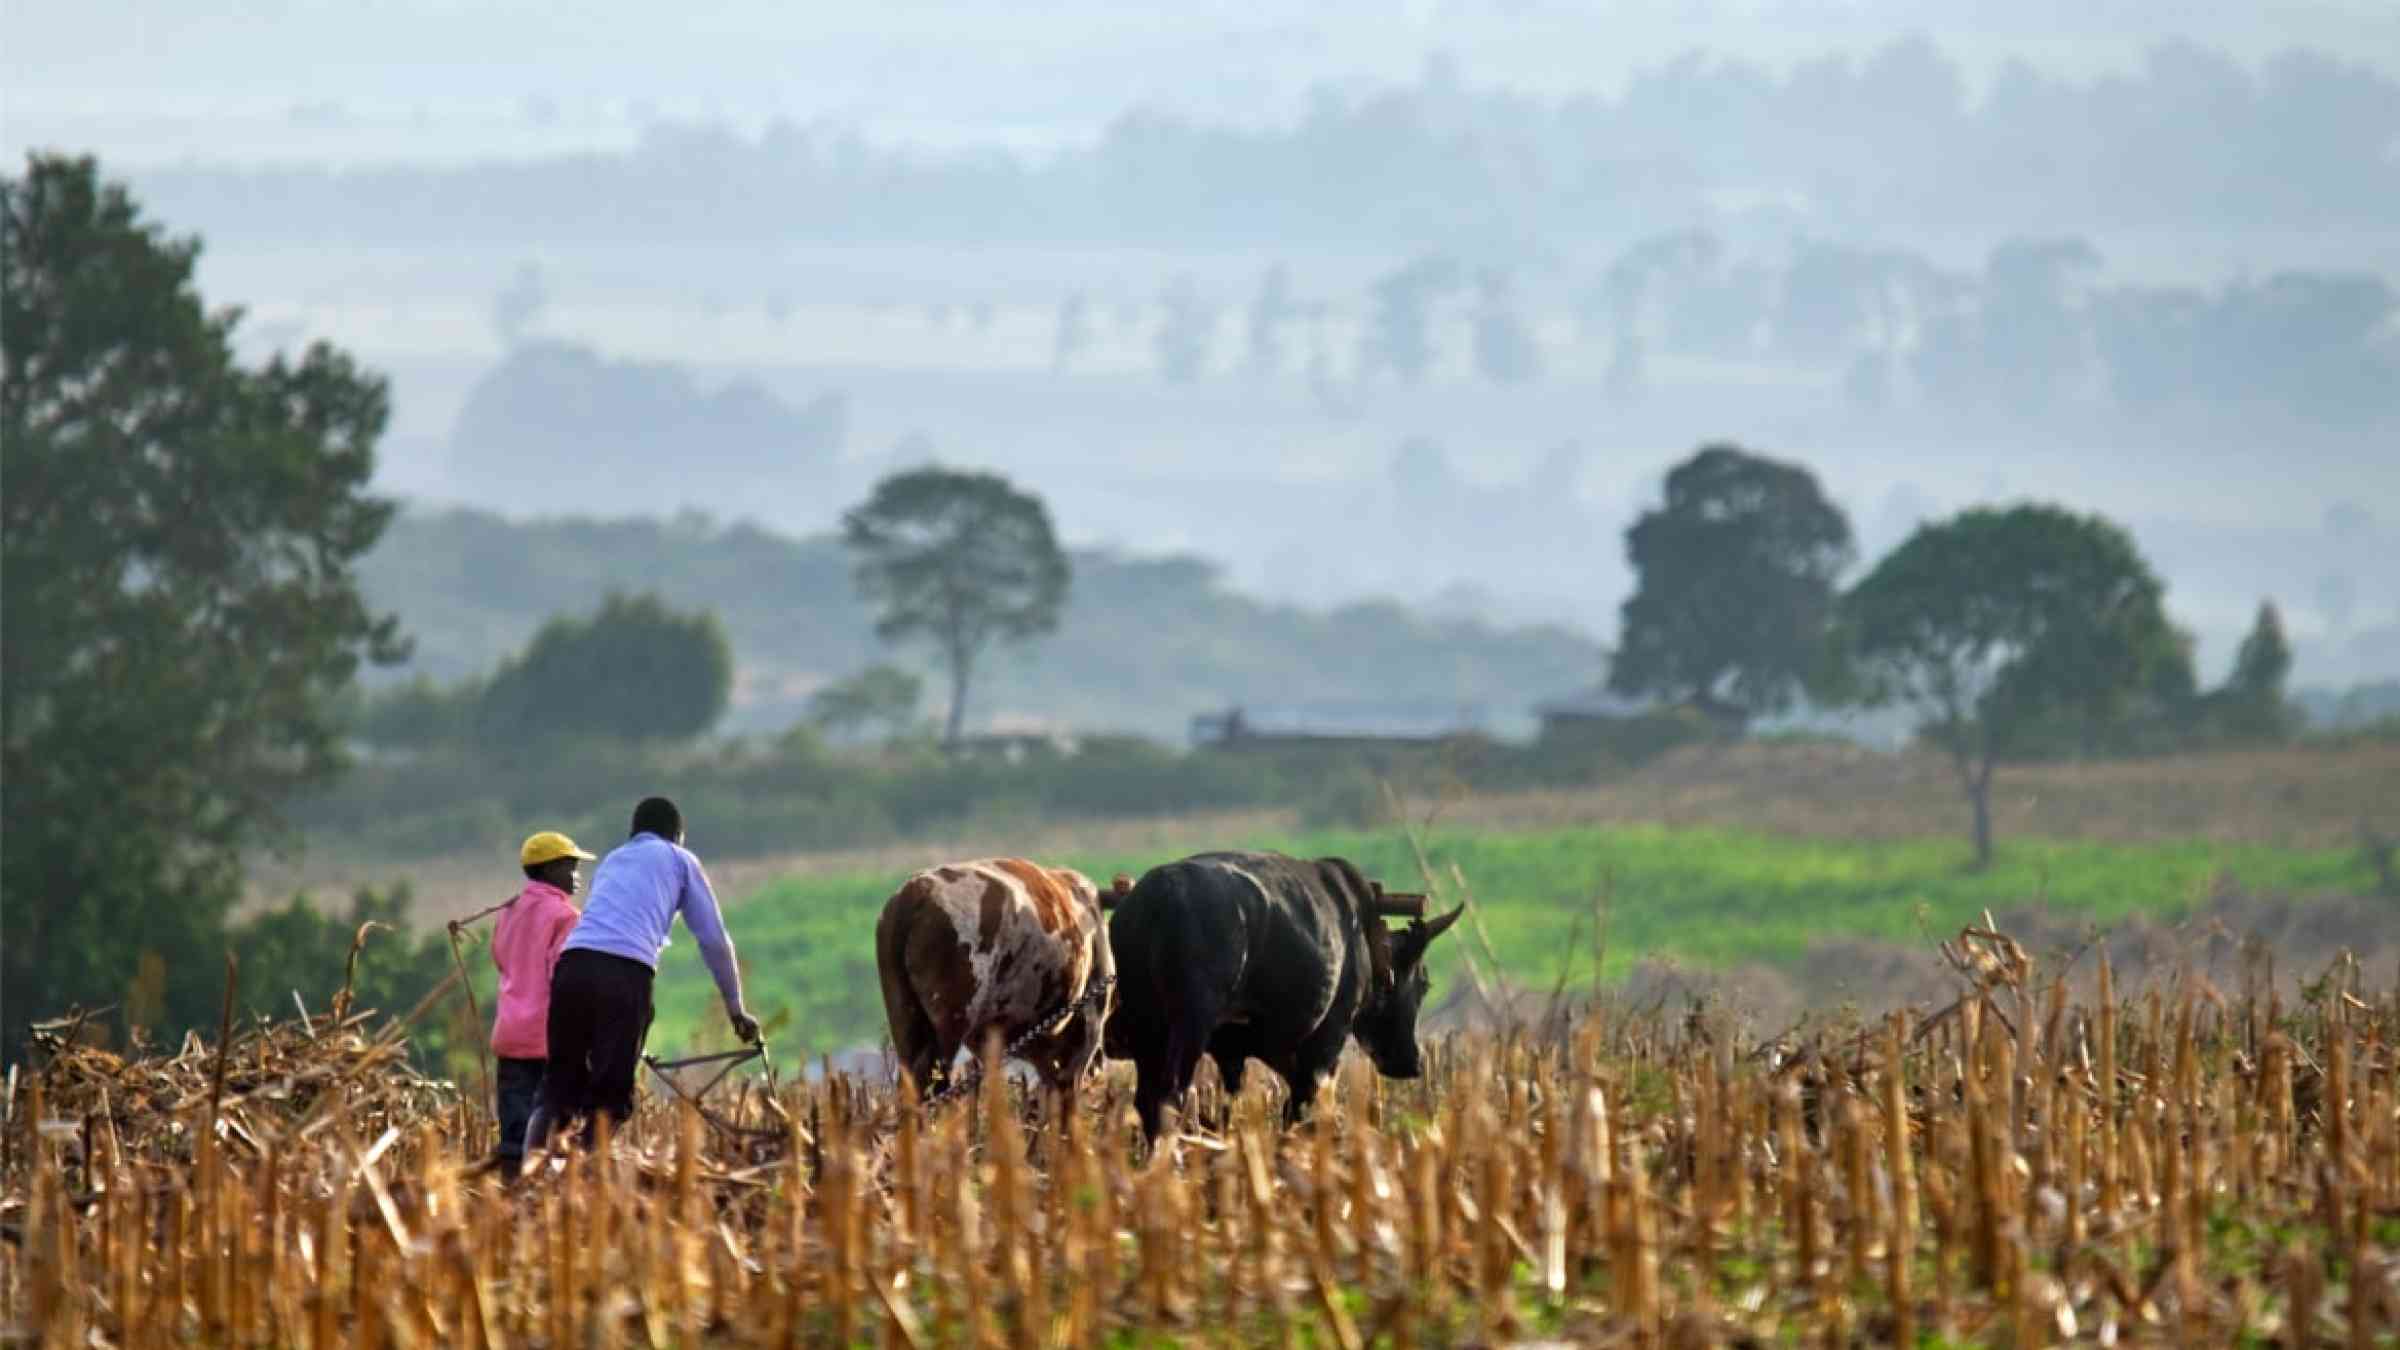 Farmers plowing a field in Kenya